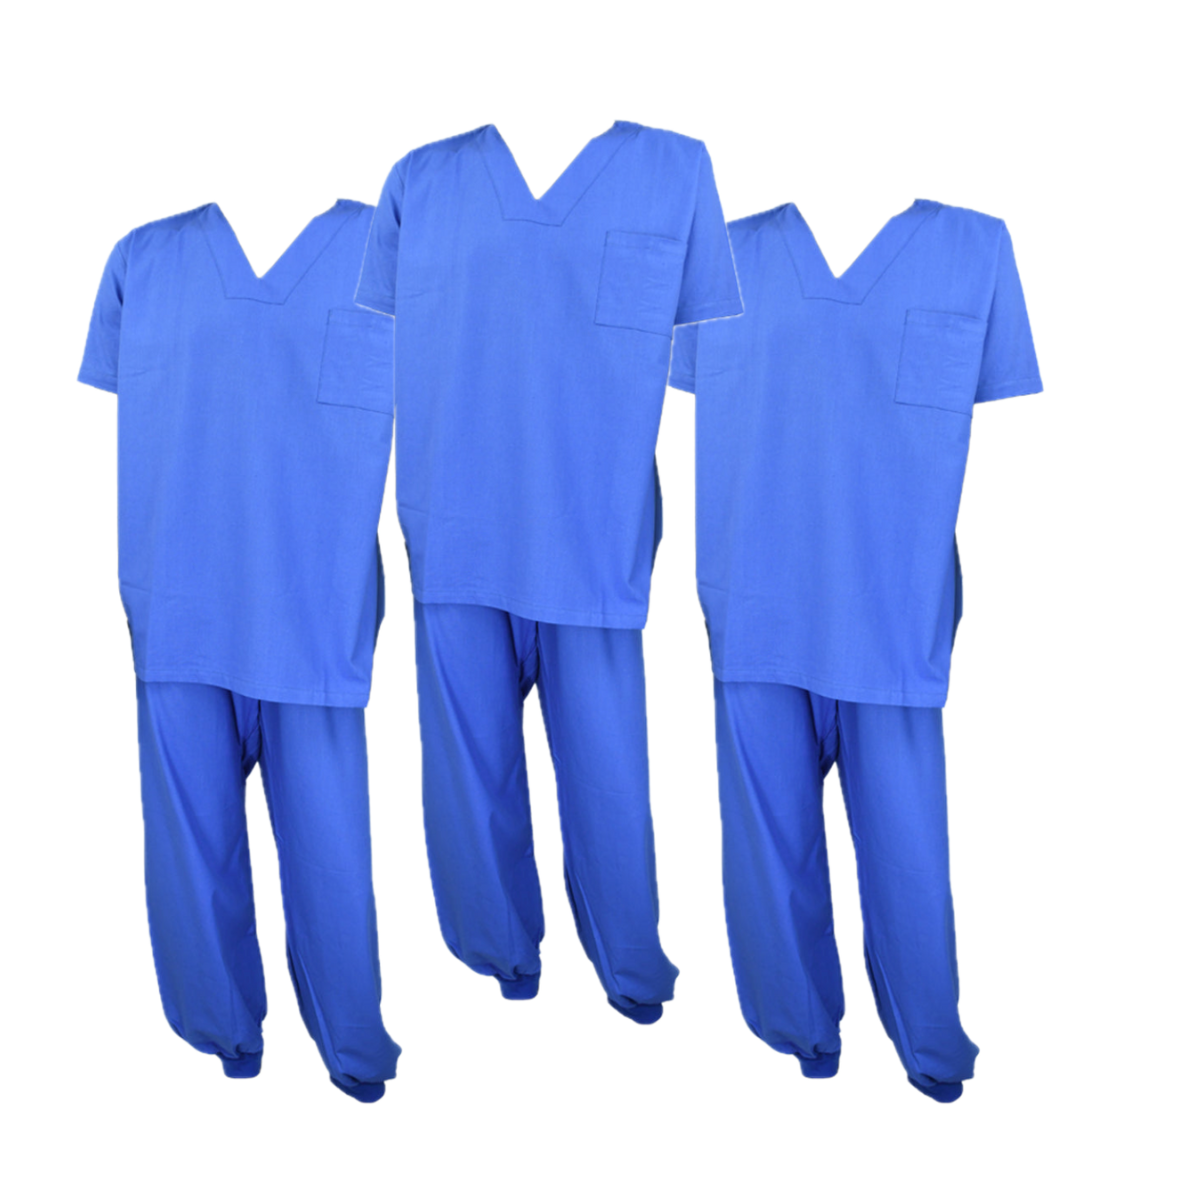 Paquete de 5 Uniformes Quirúrgicos Azules - ADIS